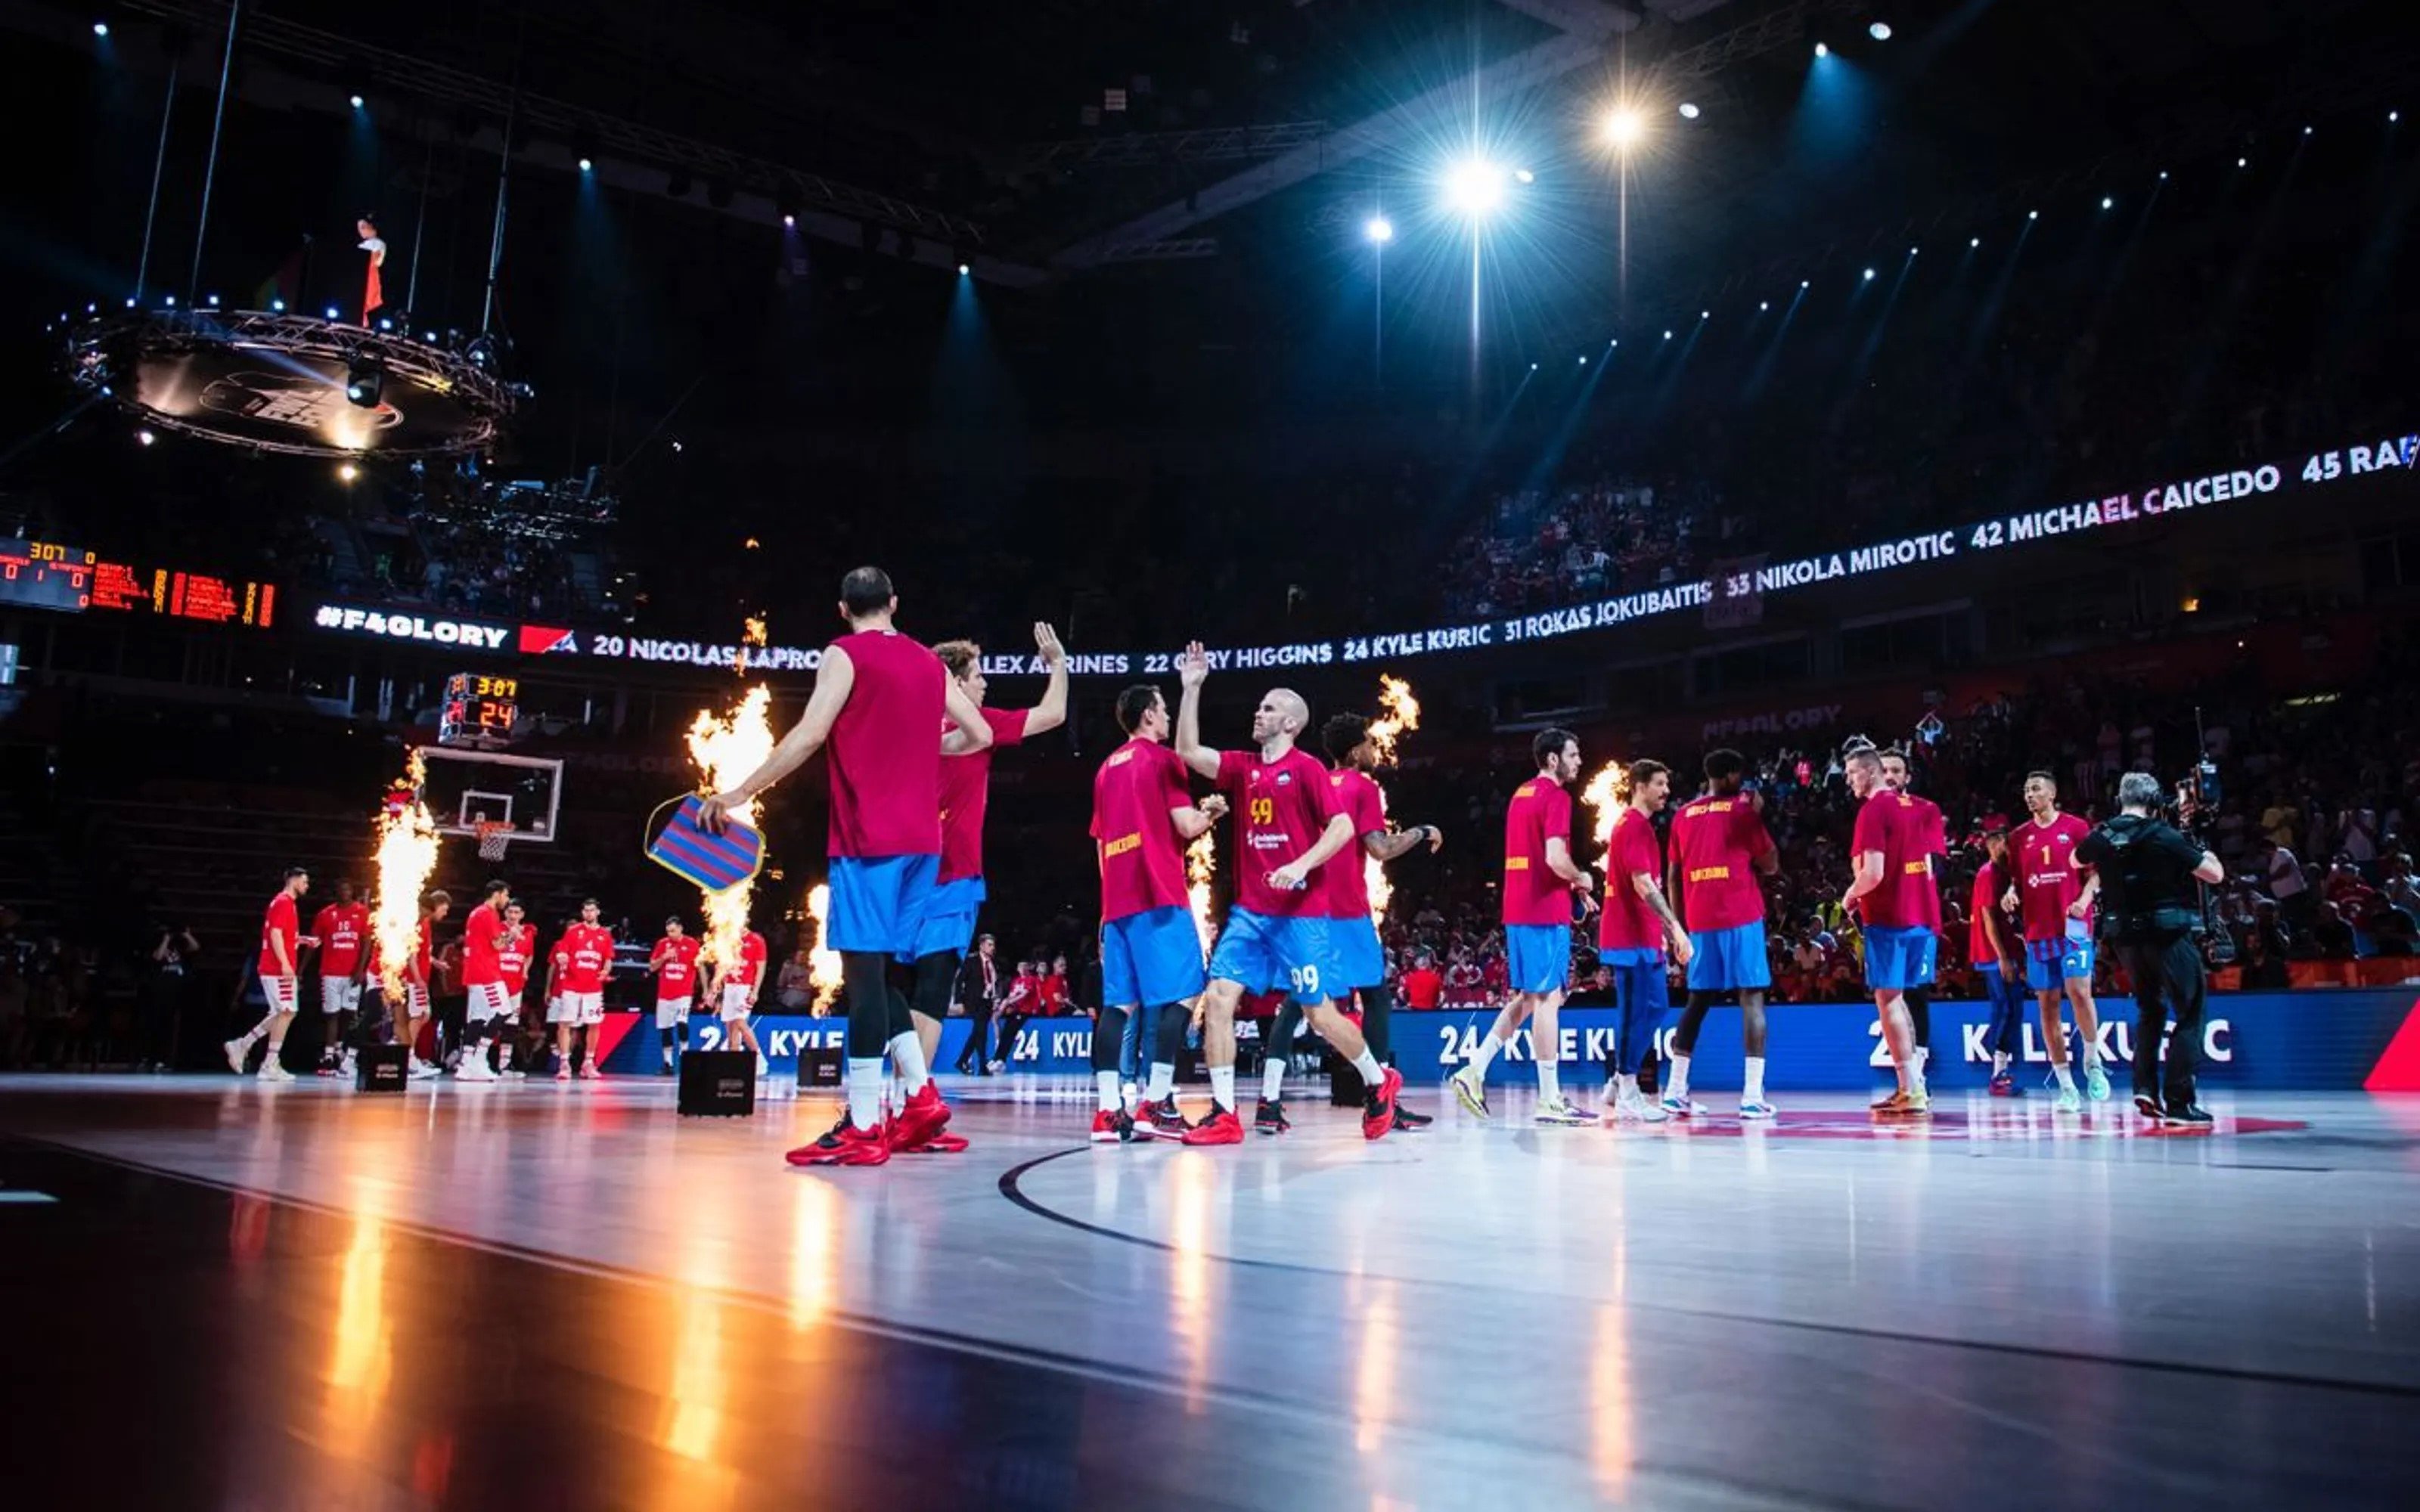 El nou somni de Barcelona: acollir la Final Four de l'Eurolliga de bàsquet al 2025